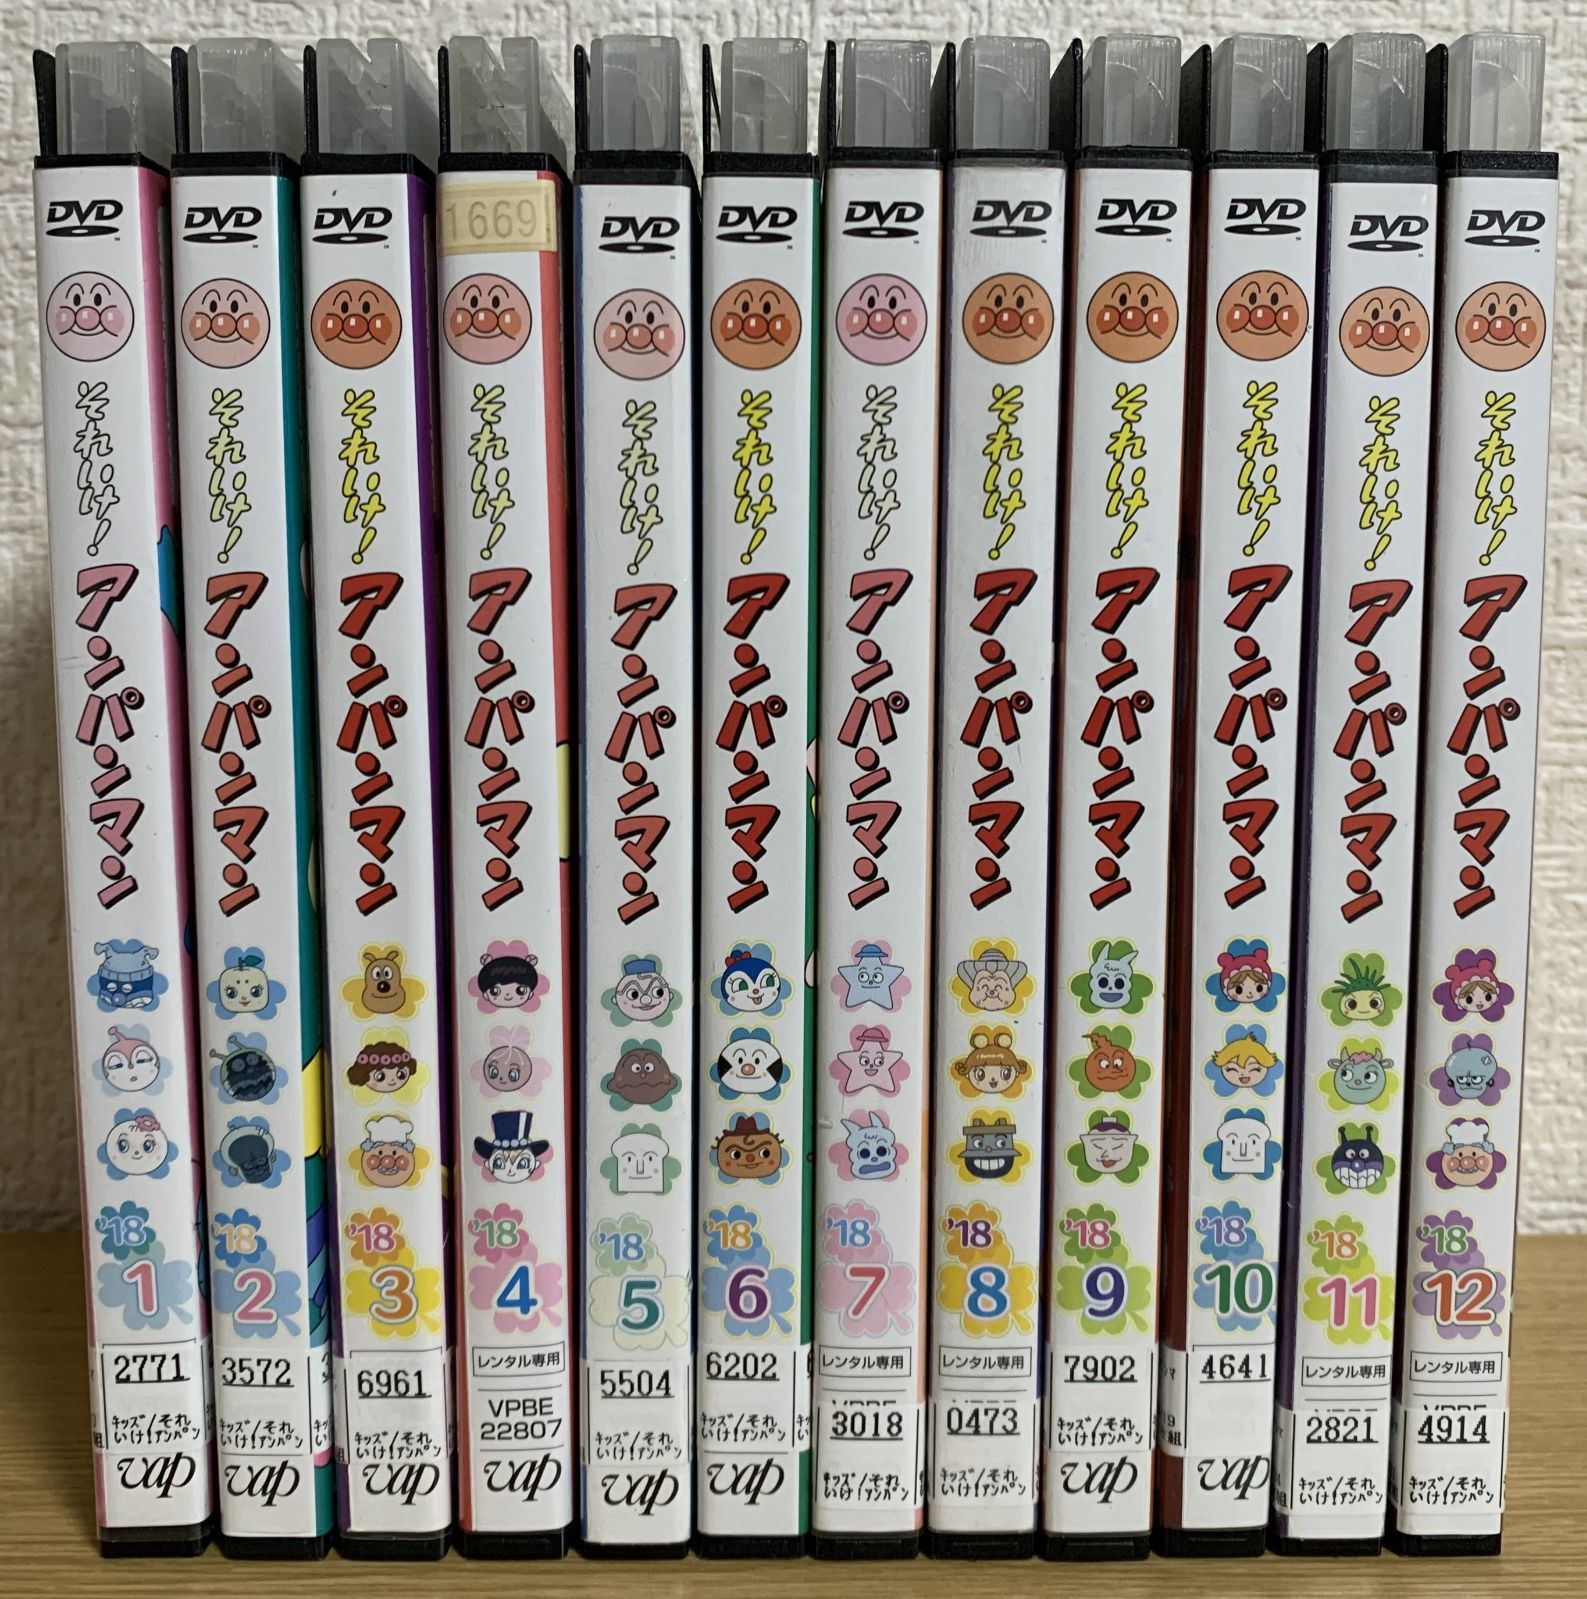 それいけ!アンパンマン '18 DVD全巻セット - ☆新世界ストア☆ メルカリ店 - メルカリ